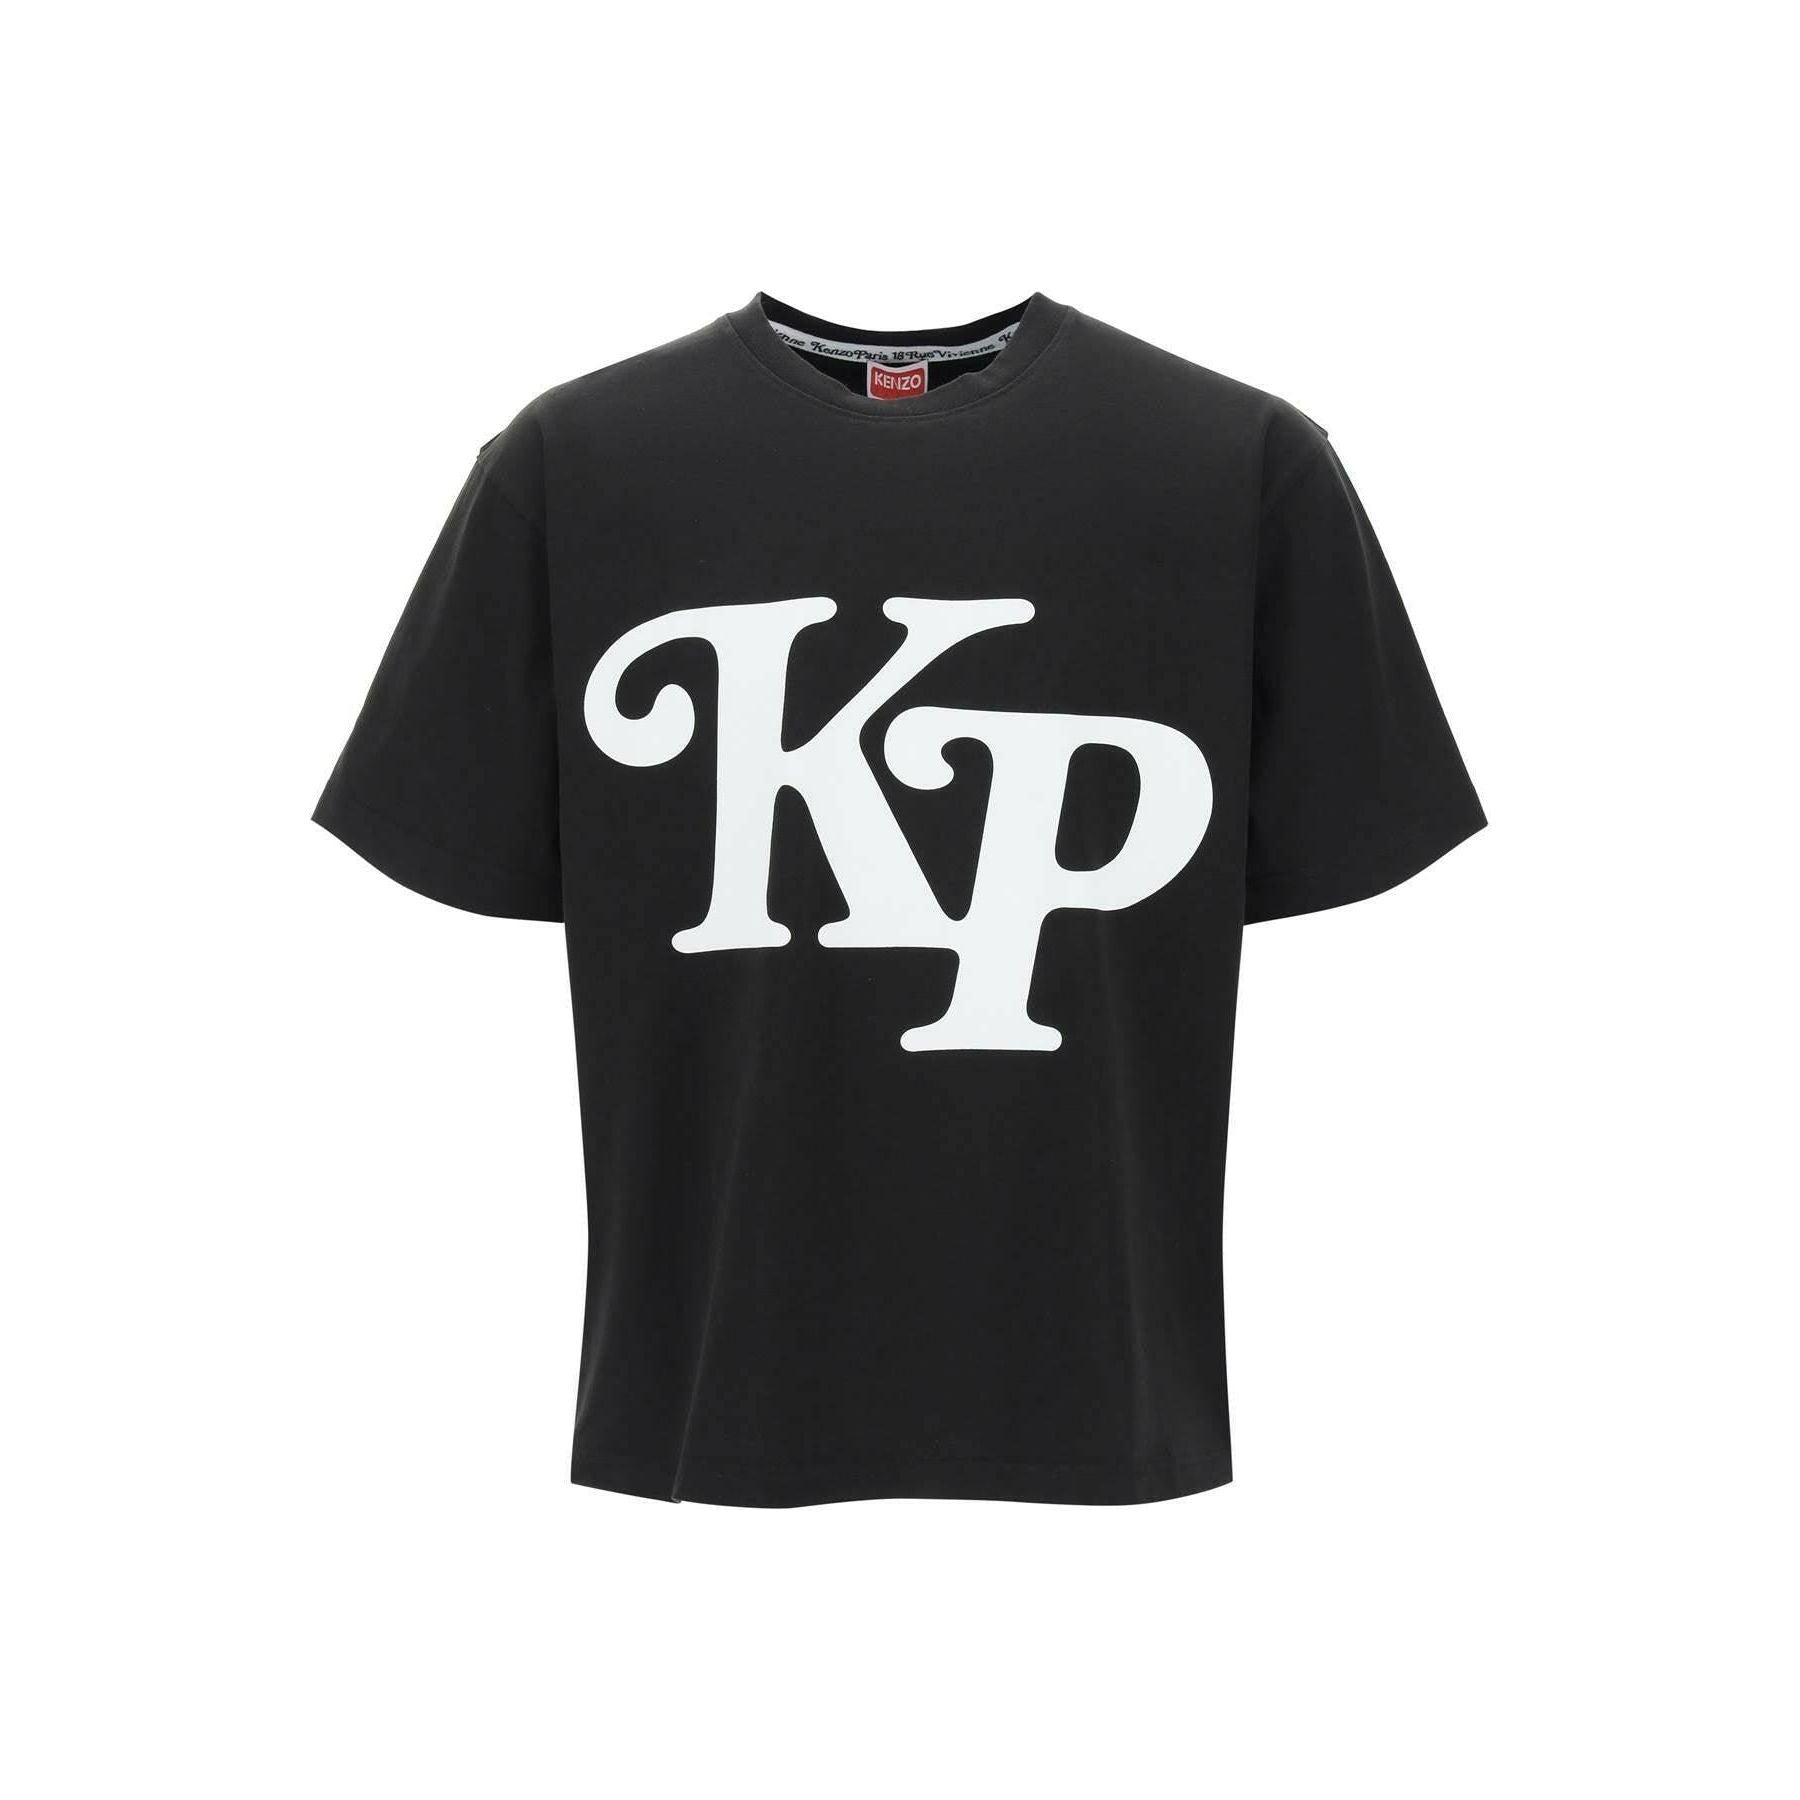 KP Organic Cotton T-shirt KENZO JOHN JULIA.